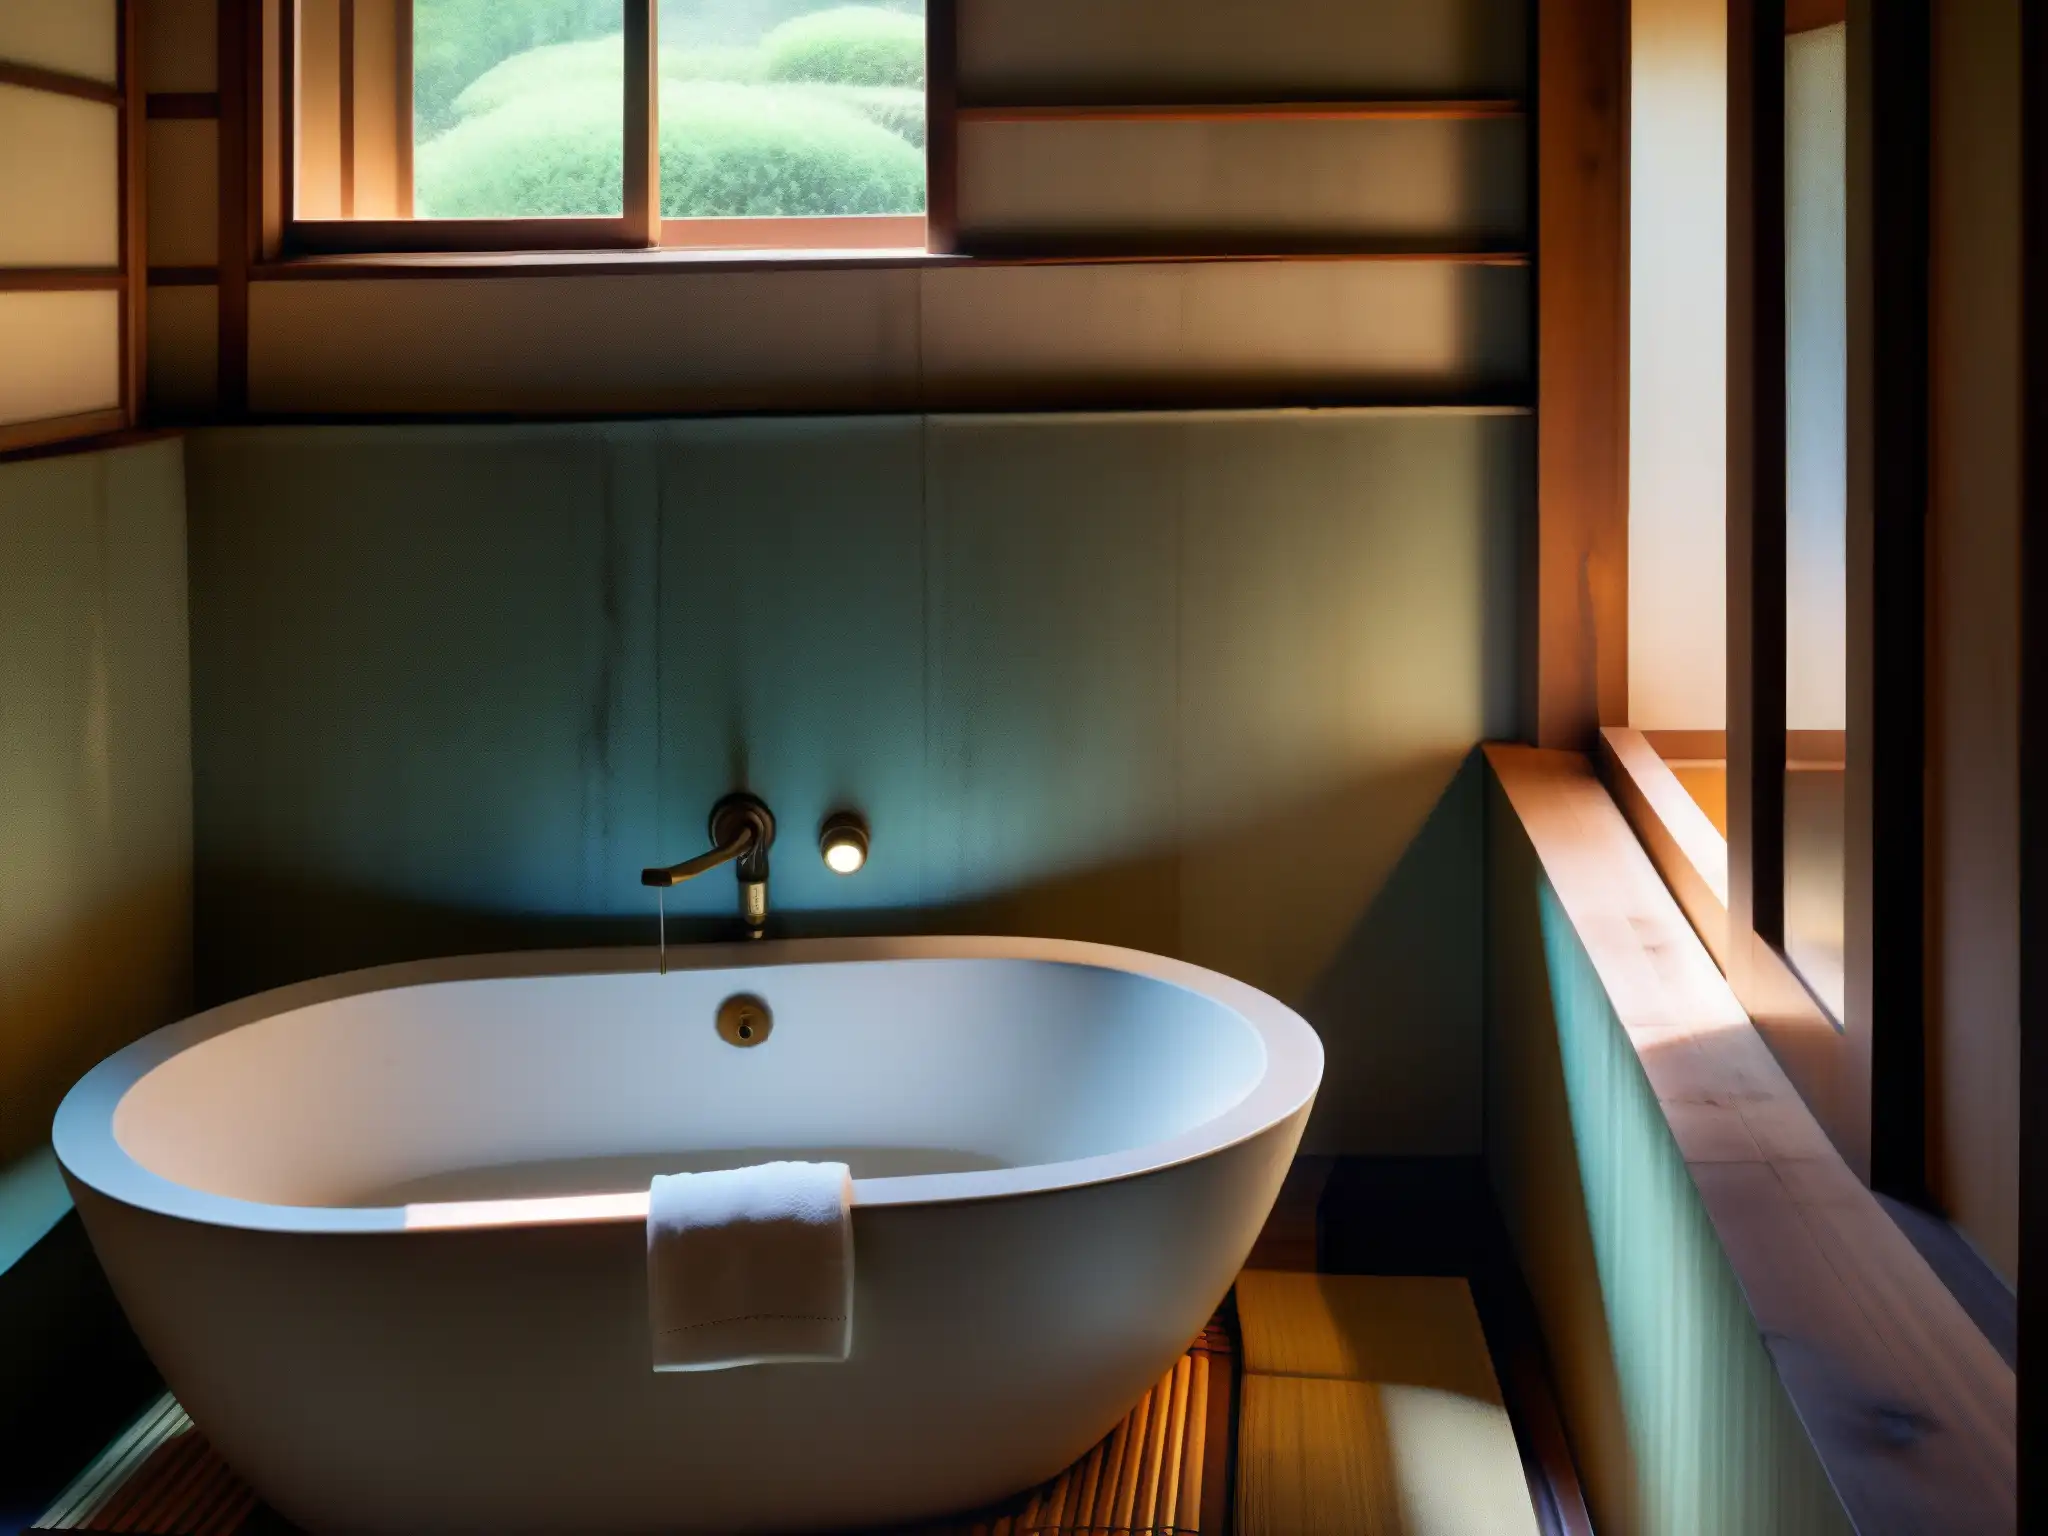 Un baño japonés tradicional con una atmósfera misteriosa y la leyenda urbana de Aka Manto en Japón